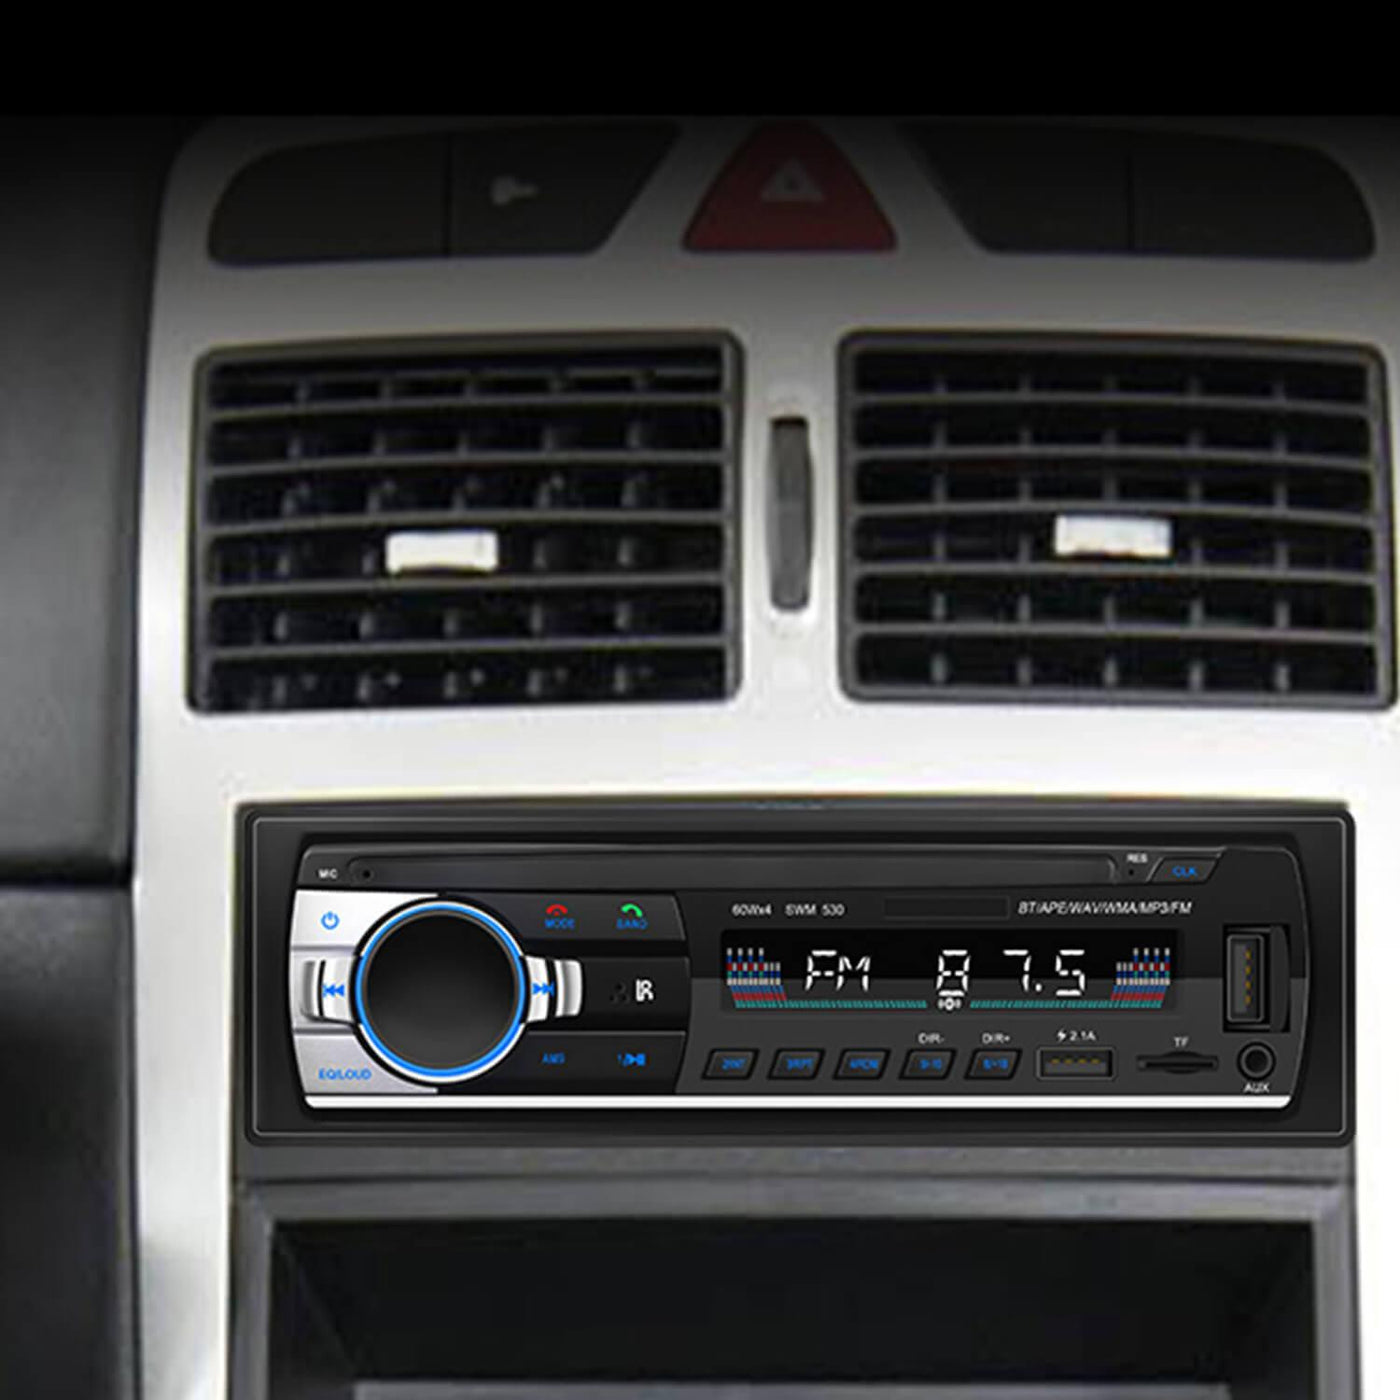 Las mejores ofertas en Pantalla Táctil 1 DIN Car Audio In-Dash units